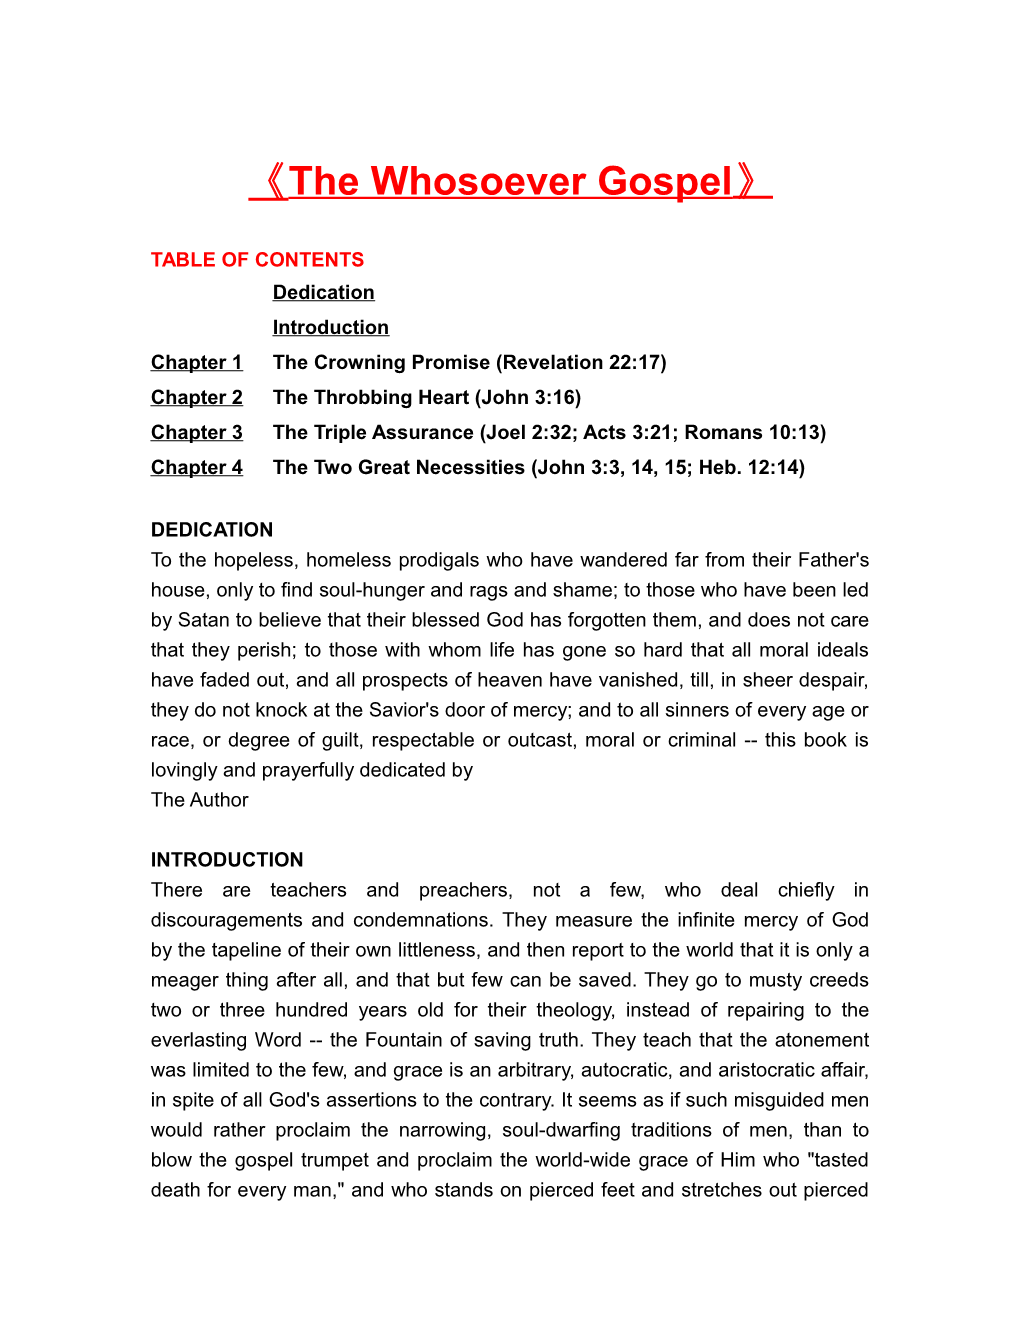 The Whosoever Gospel